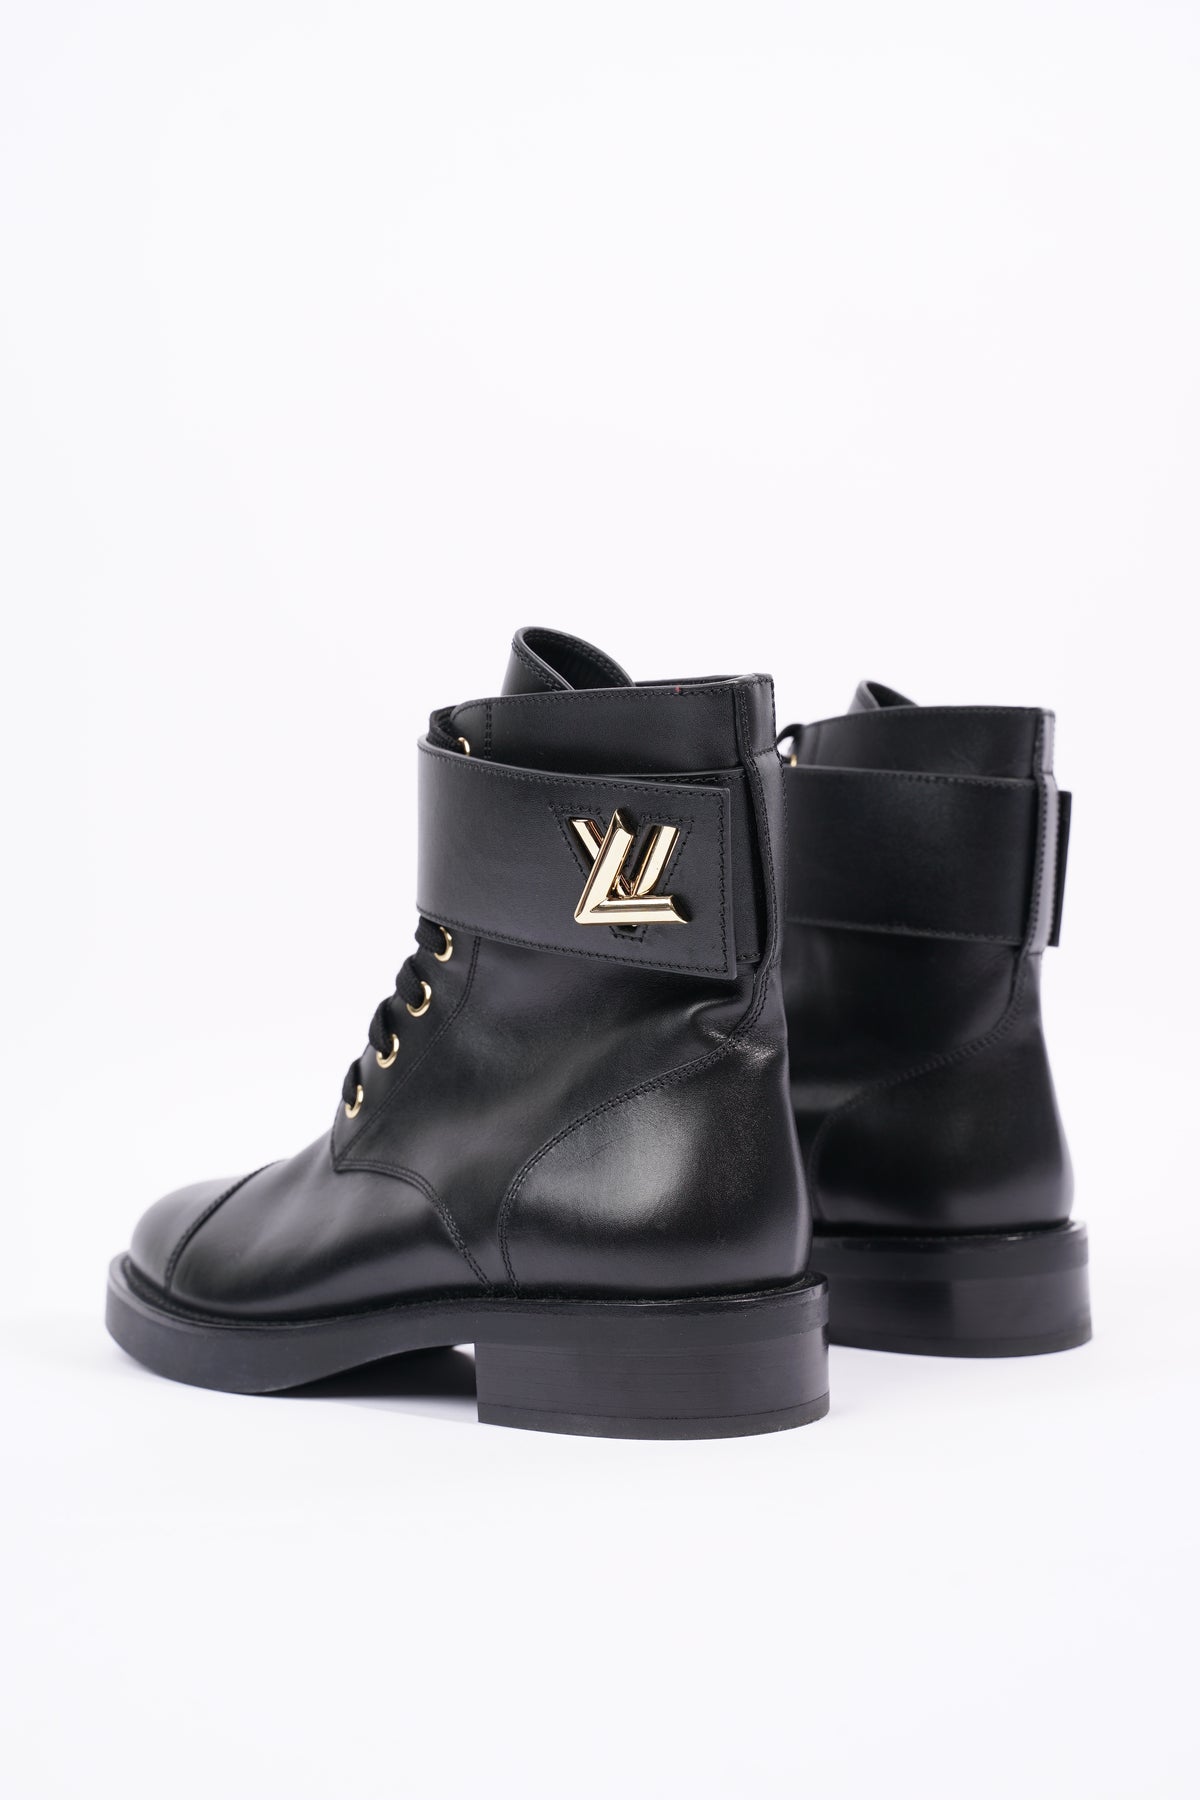 Louis Vuitton Womens Wonderland Boot Black / Gold EU 36 / UK 3